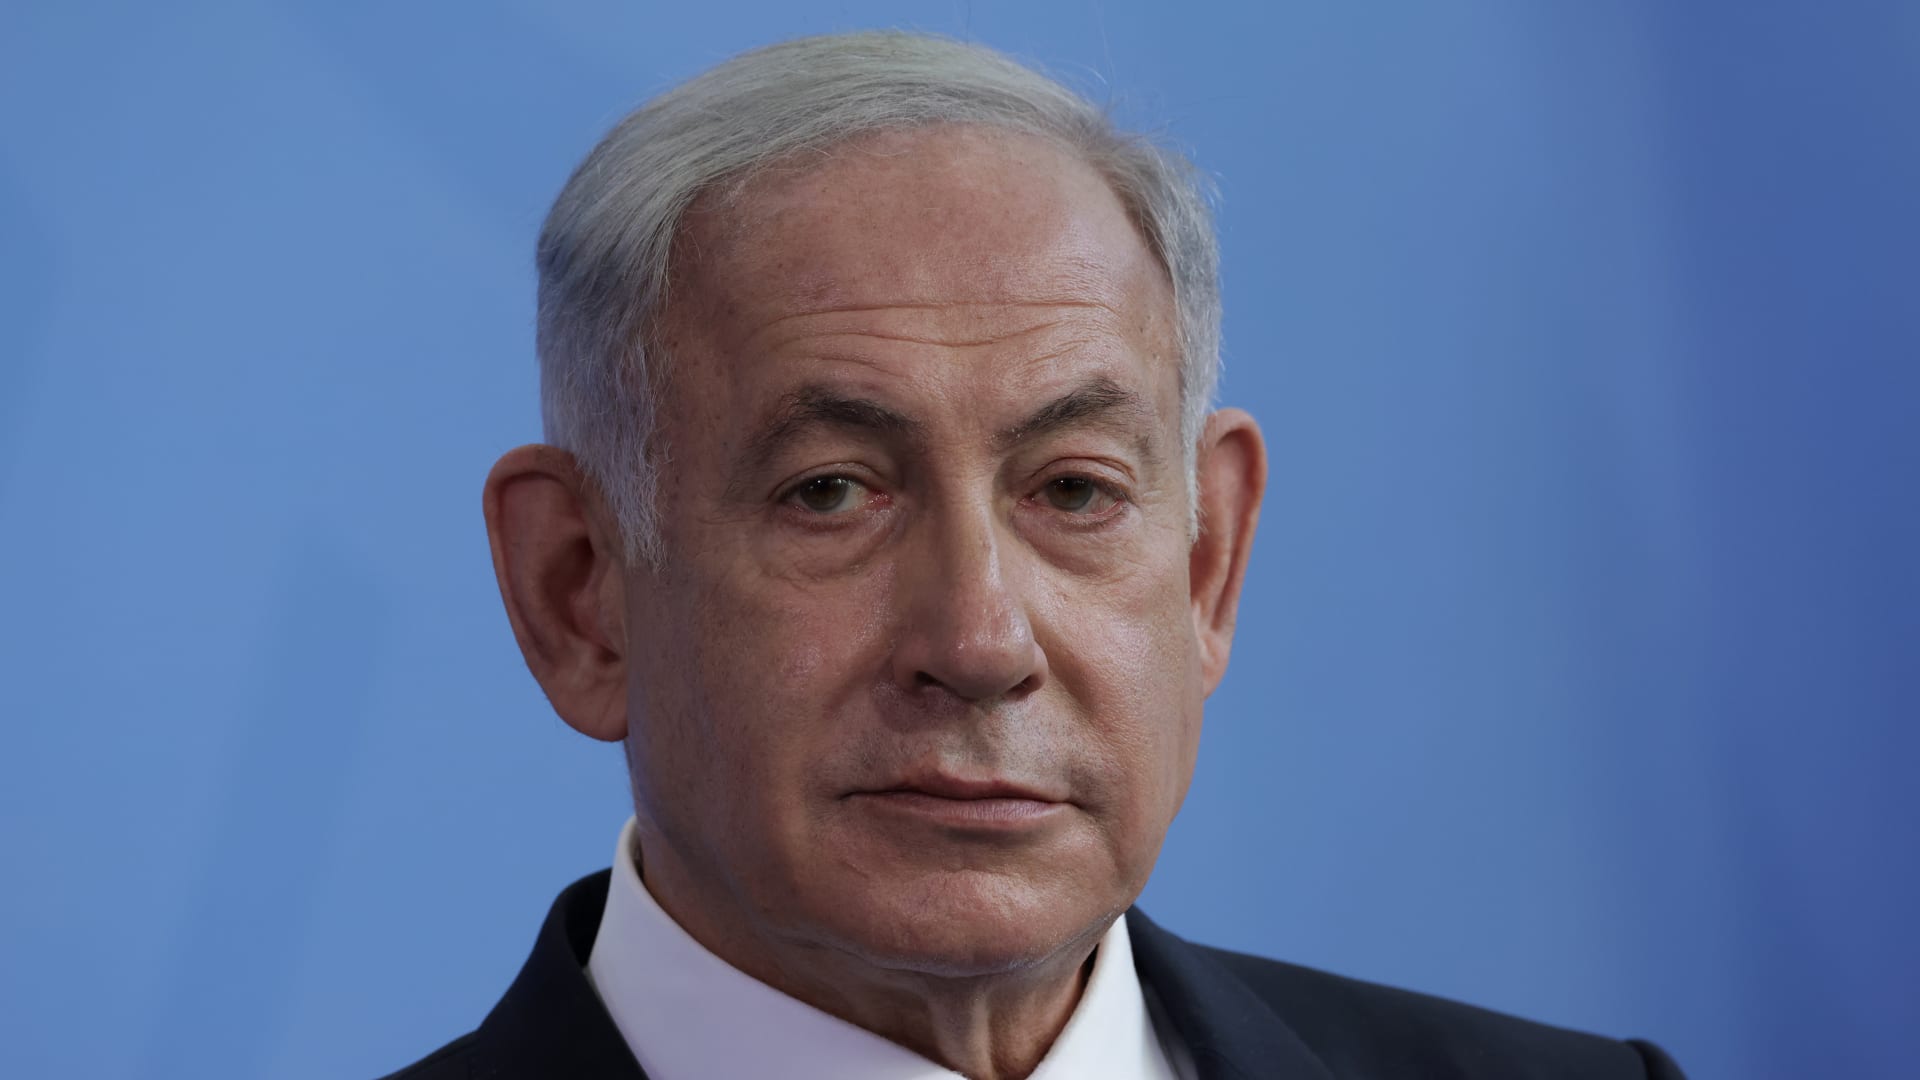 سوليفان لـCNN: نتنياهو مسؤول عن وقف عنف المستوطنين ضد الفلسطينيين بالضفة الغربية